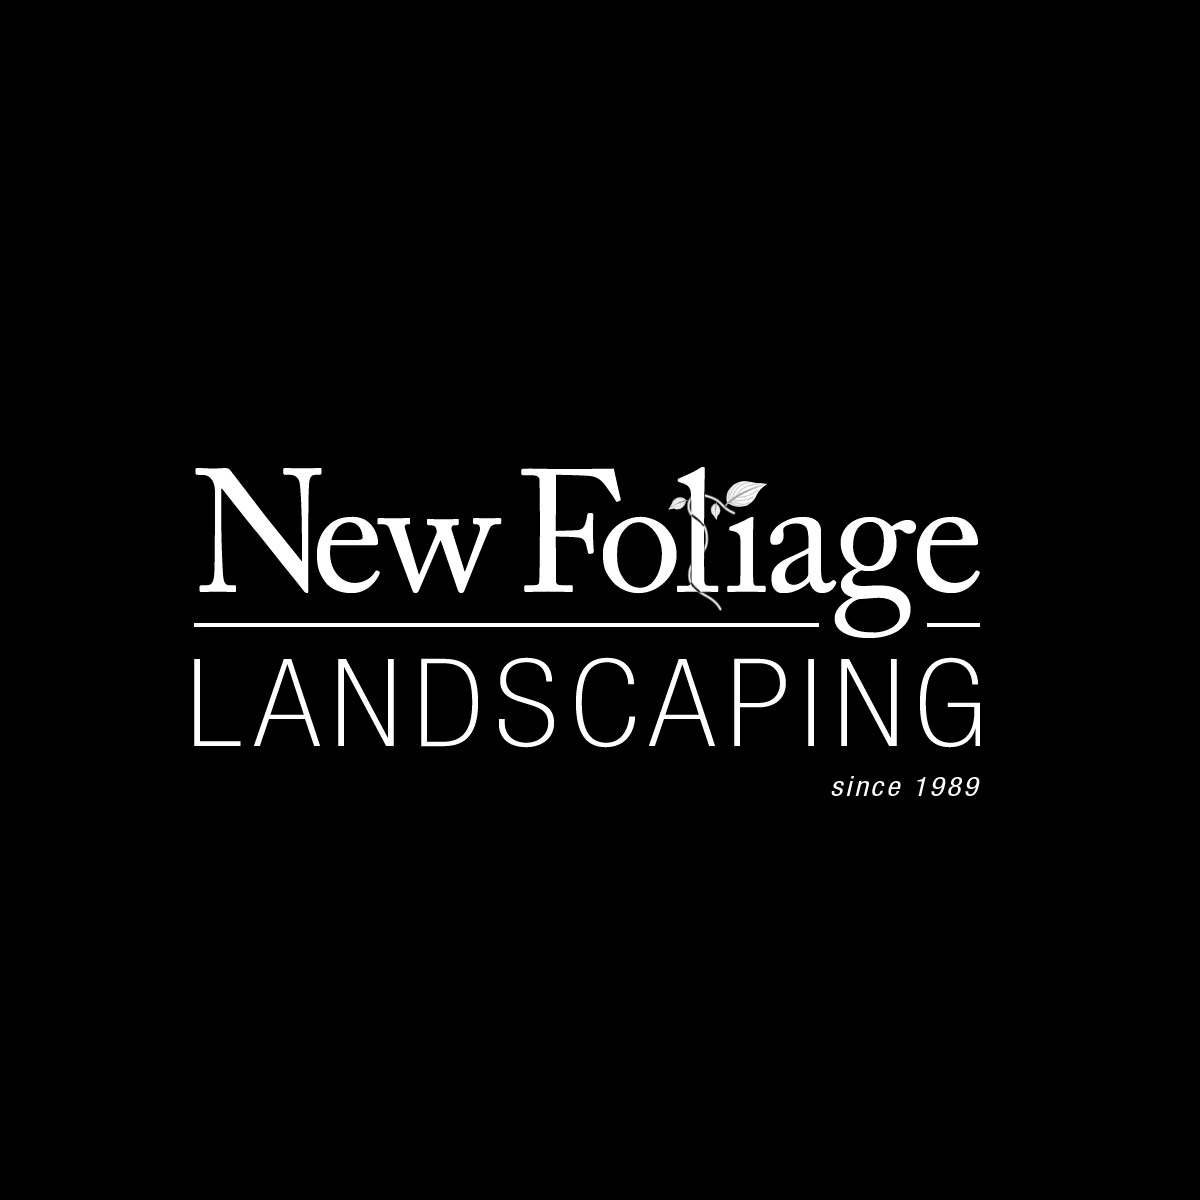 New Foliage Landscaping Logo